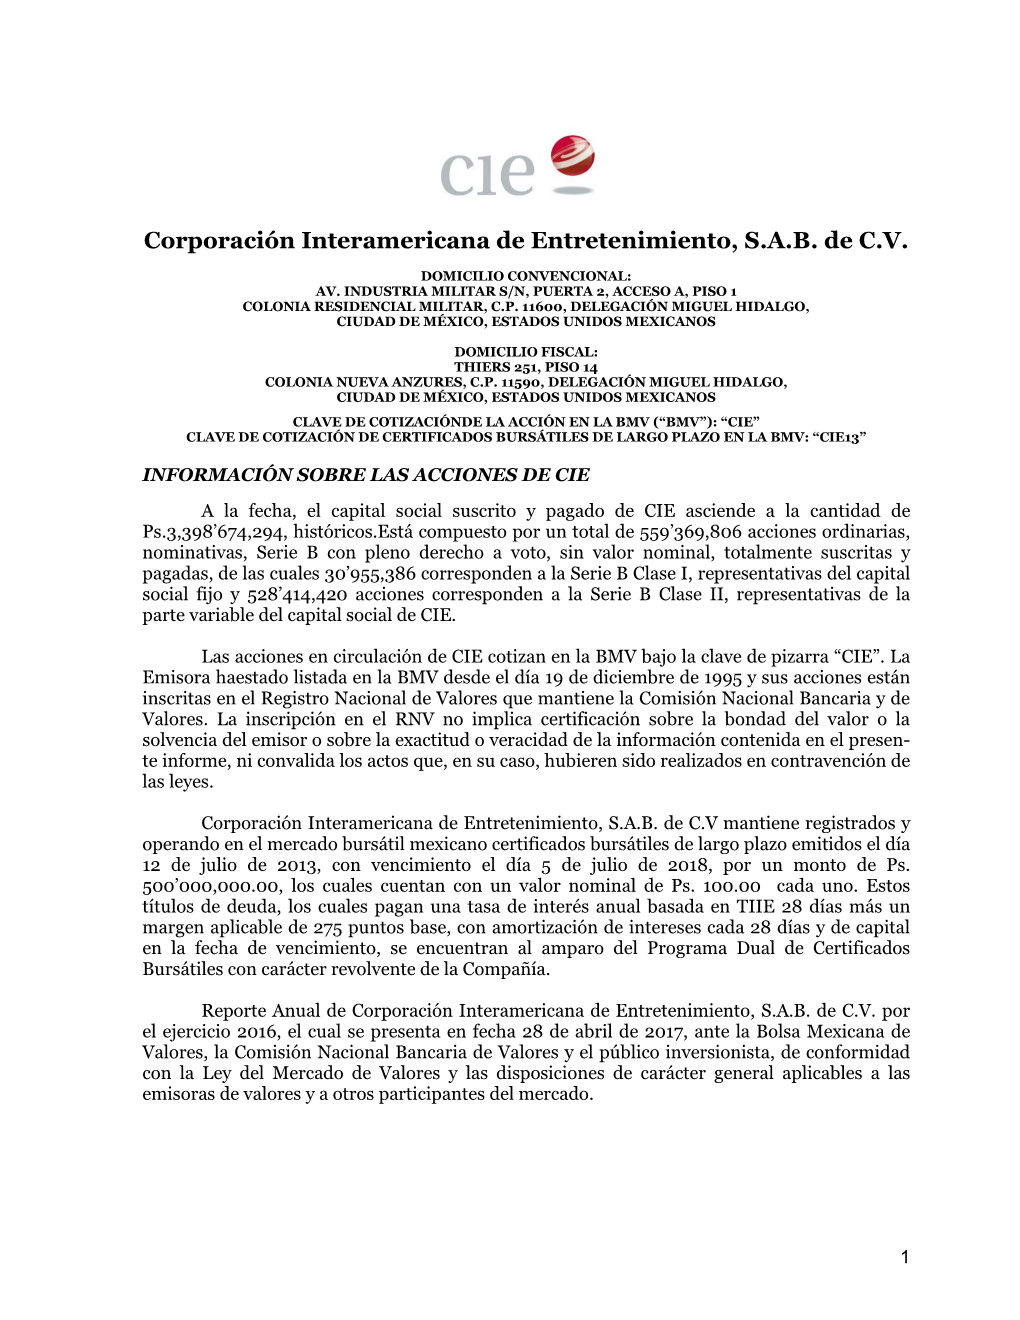 Corporación Interamericana De Entretenimiento, S.A.B. De C.V